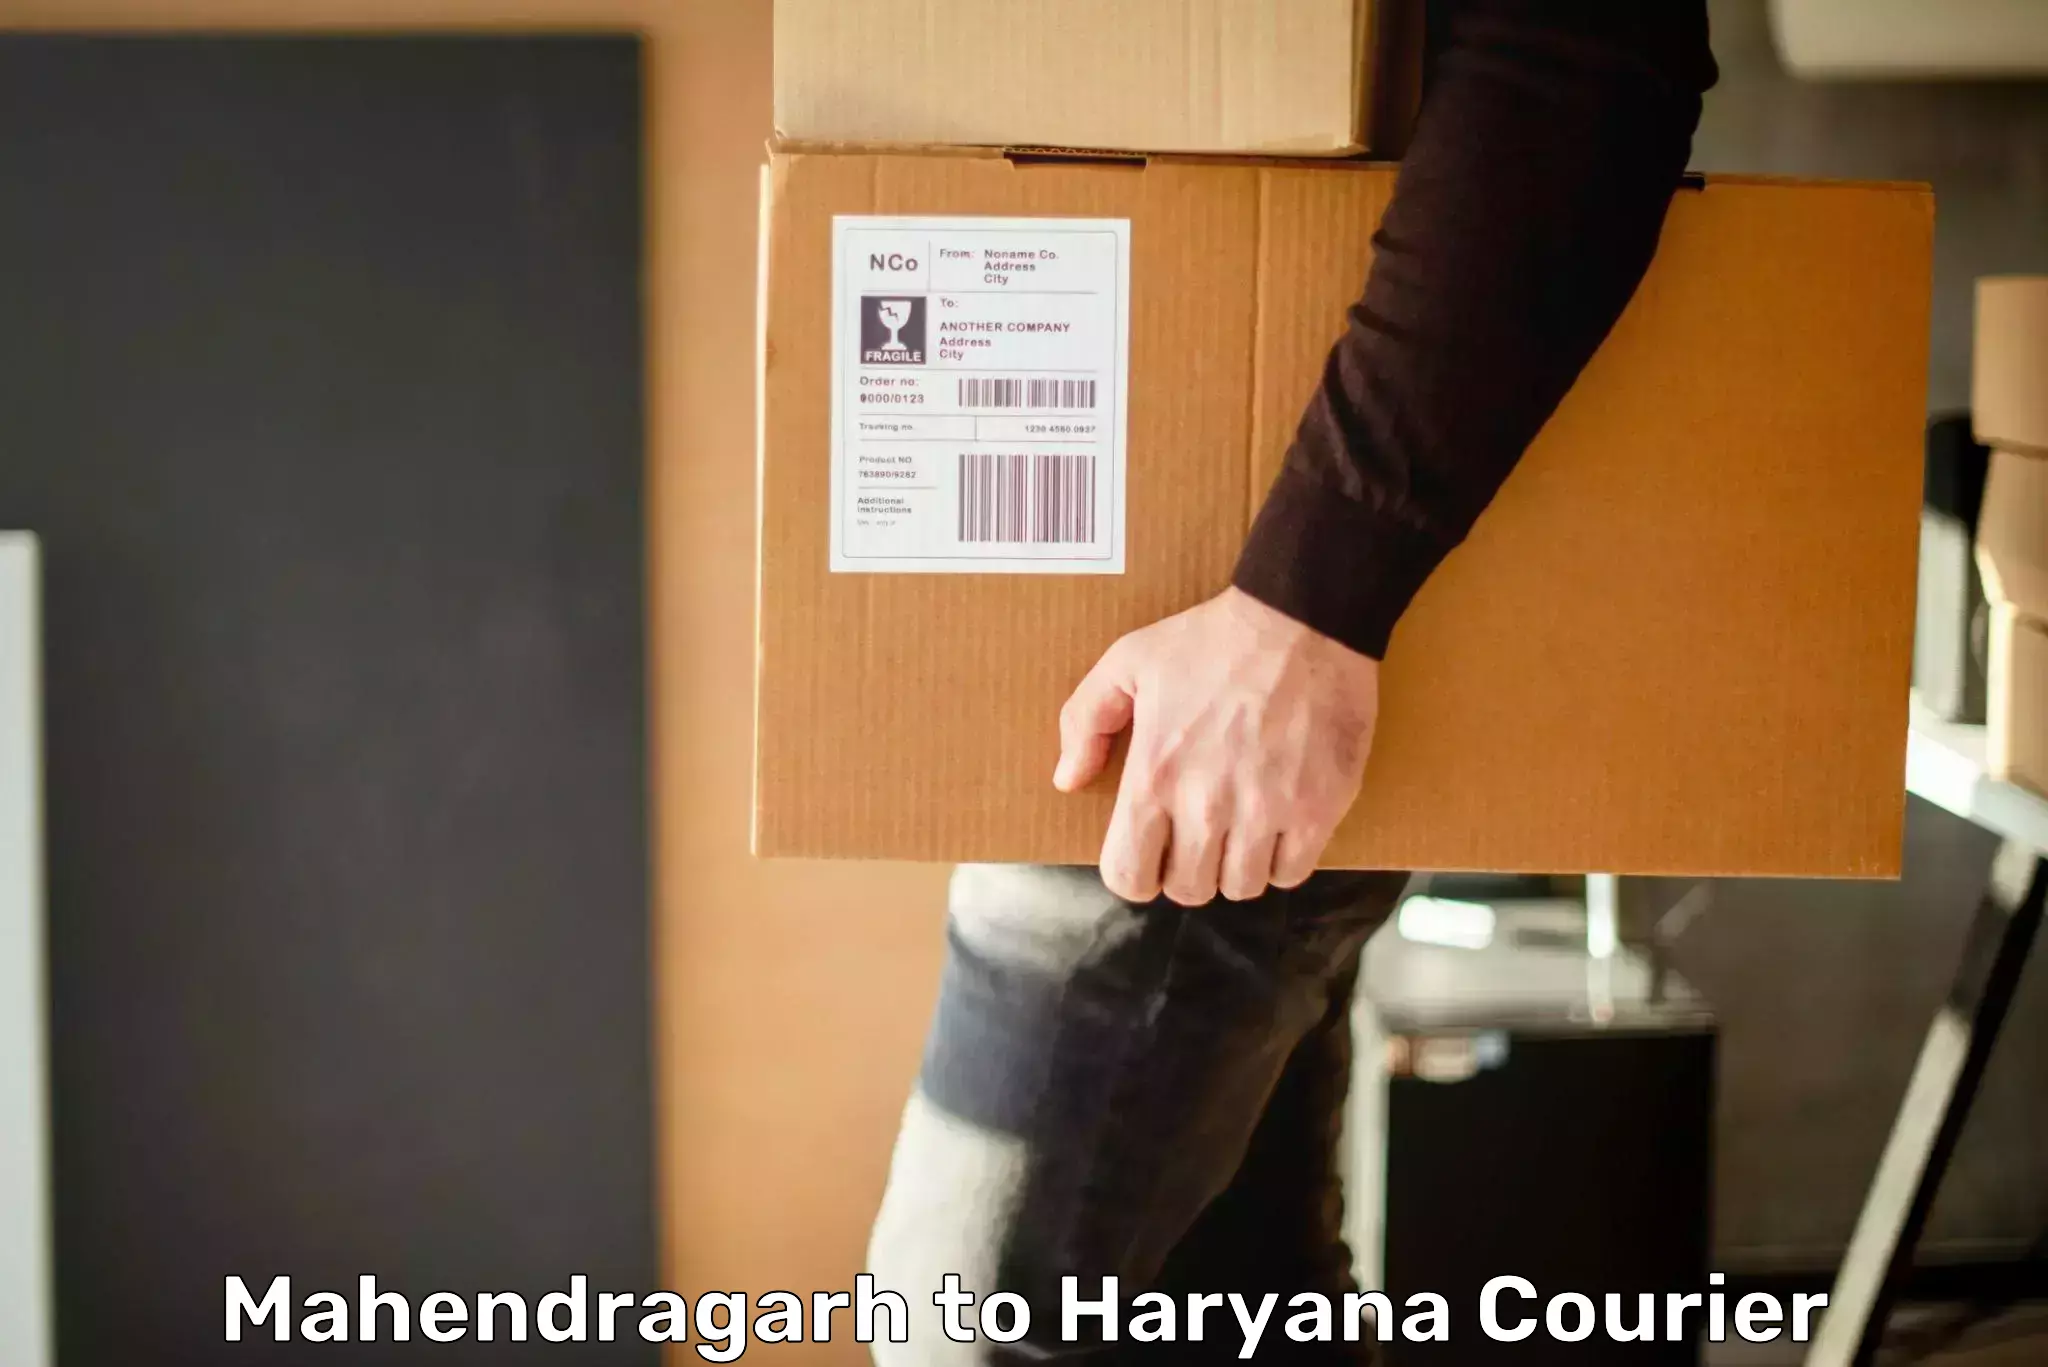 Urgent courier needs Mahendragarh to Bilaspur Haryana